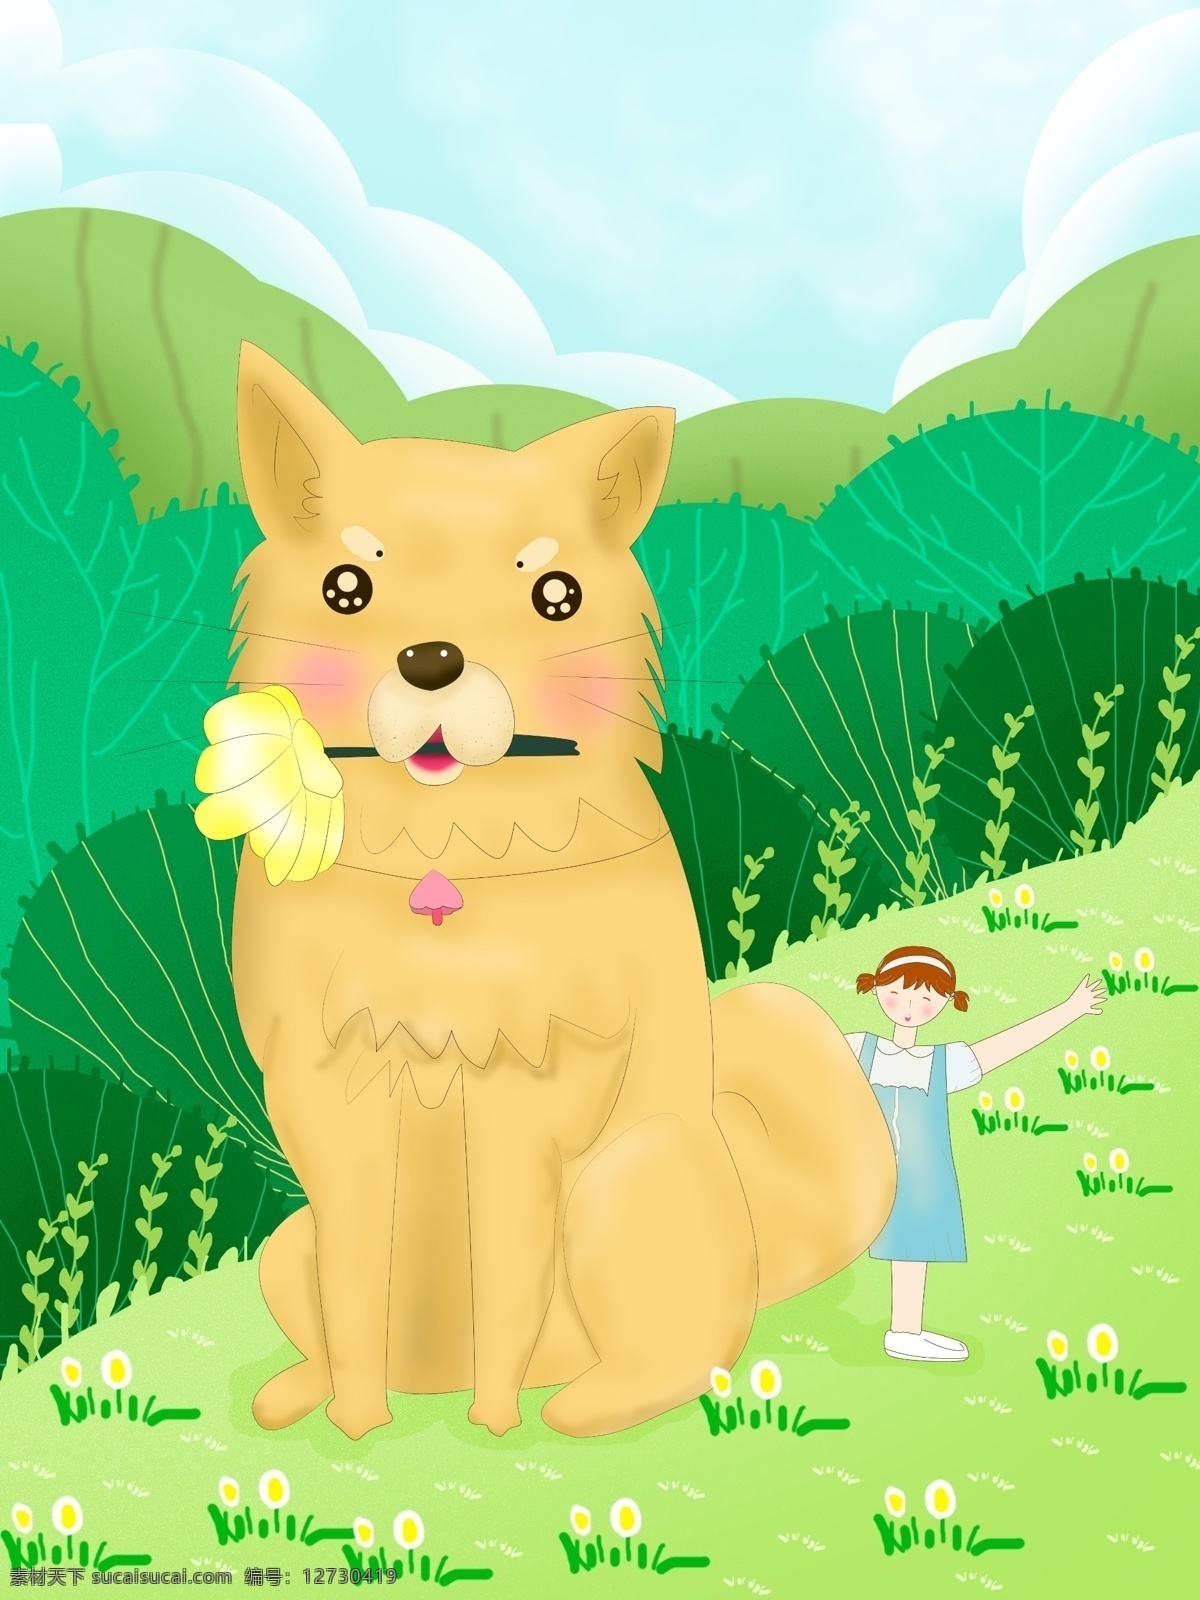 六月 你好 欢迎 夏天 到来 女孩 扁平 风 插画 六月你好 立夏 青年 卡通 树木 绿地 植物 画 宠物 狗狗